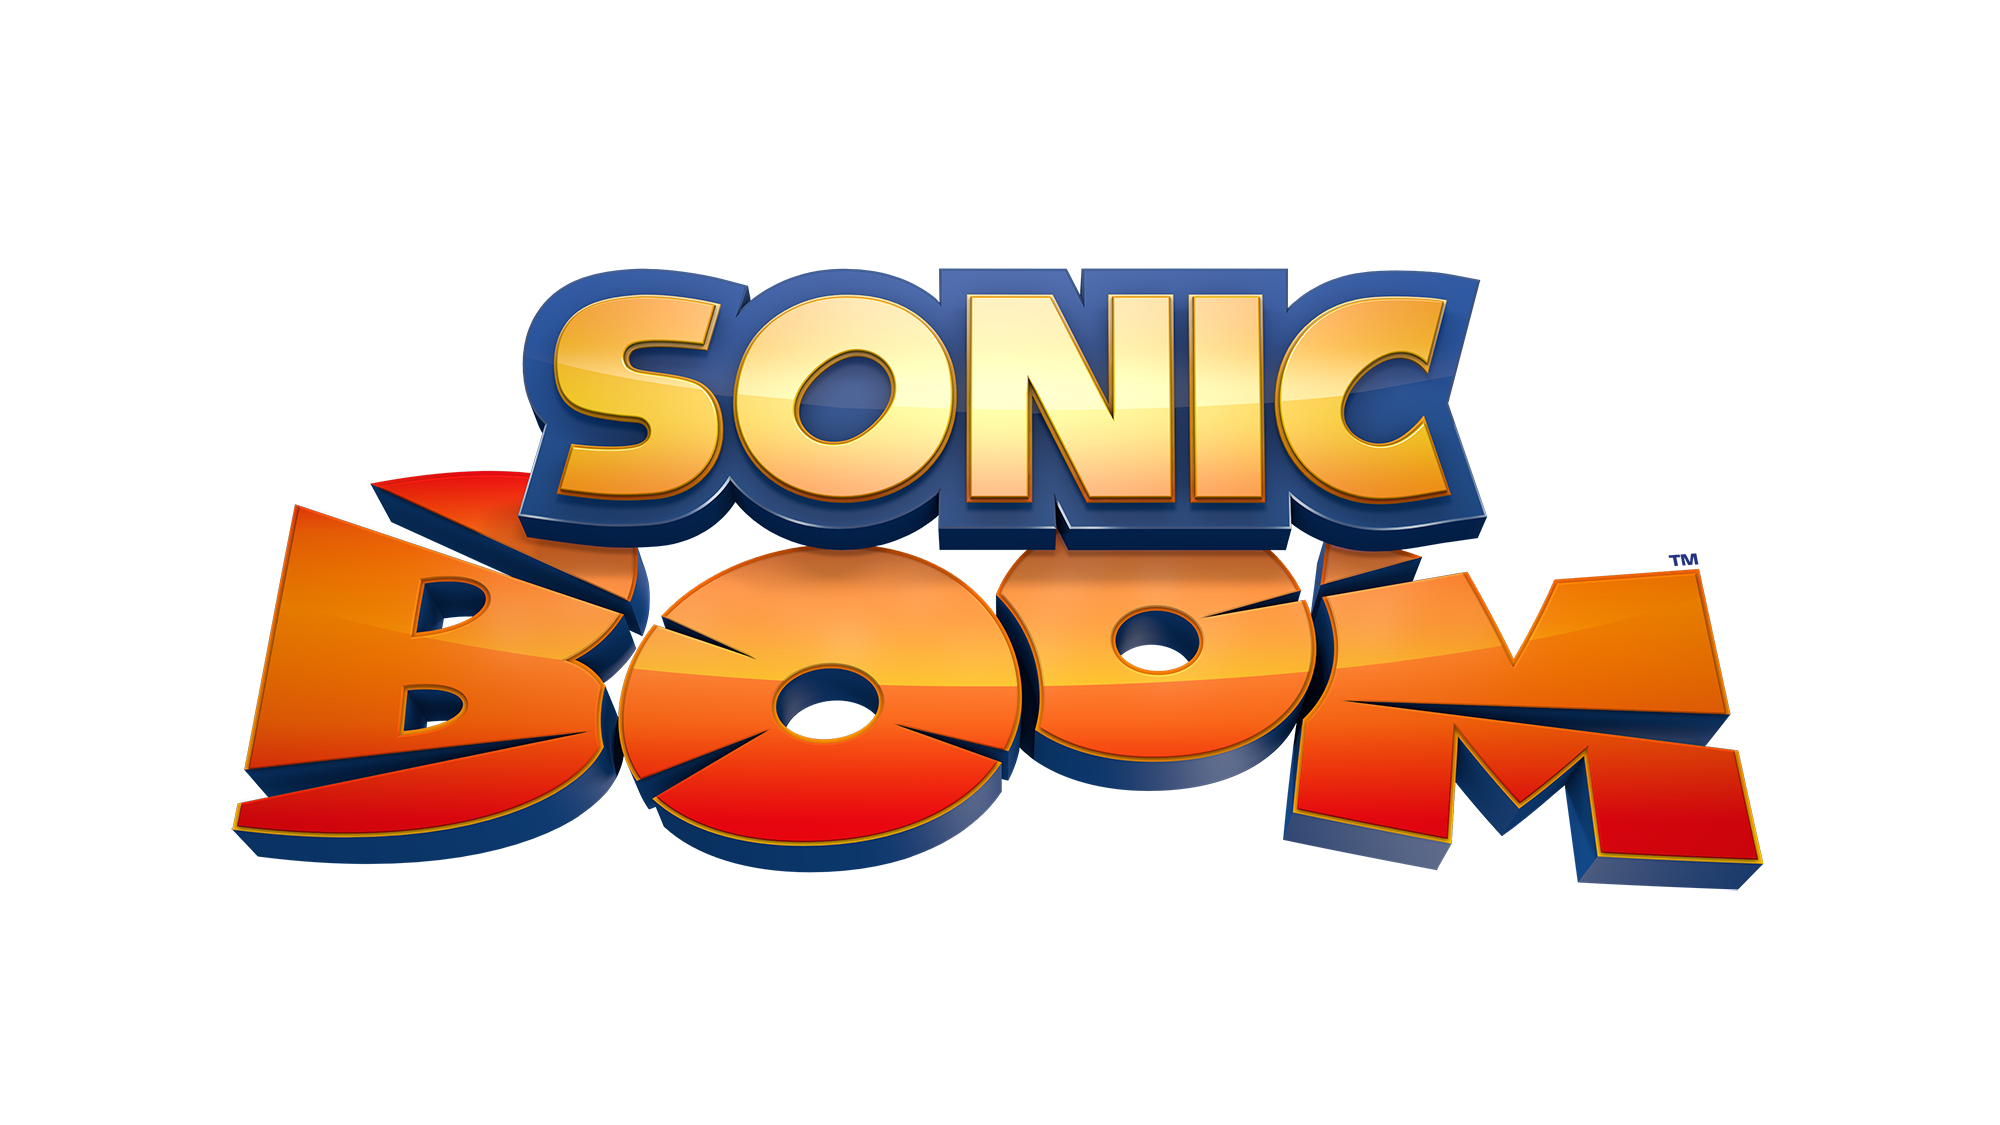 Sonic Boom - Series Logo (English)